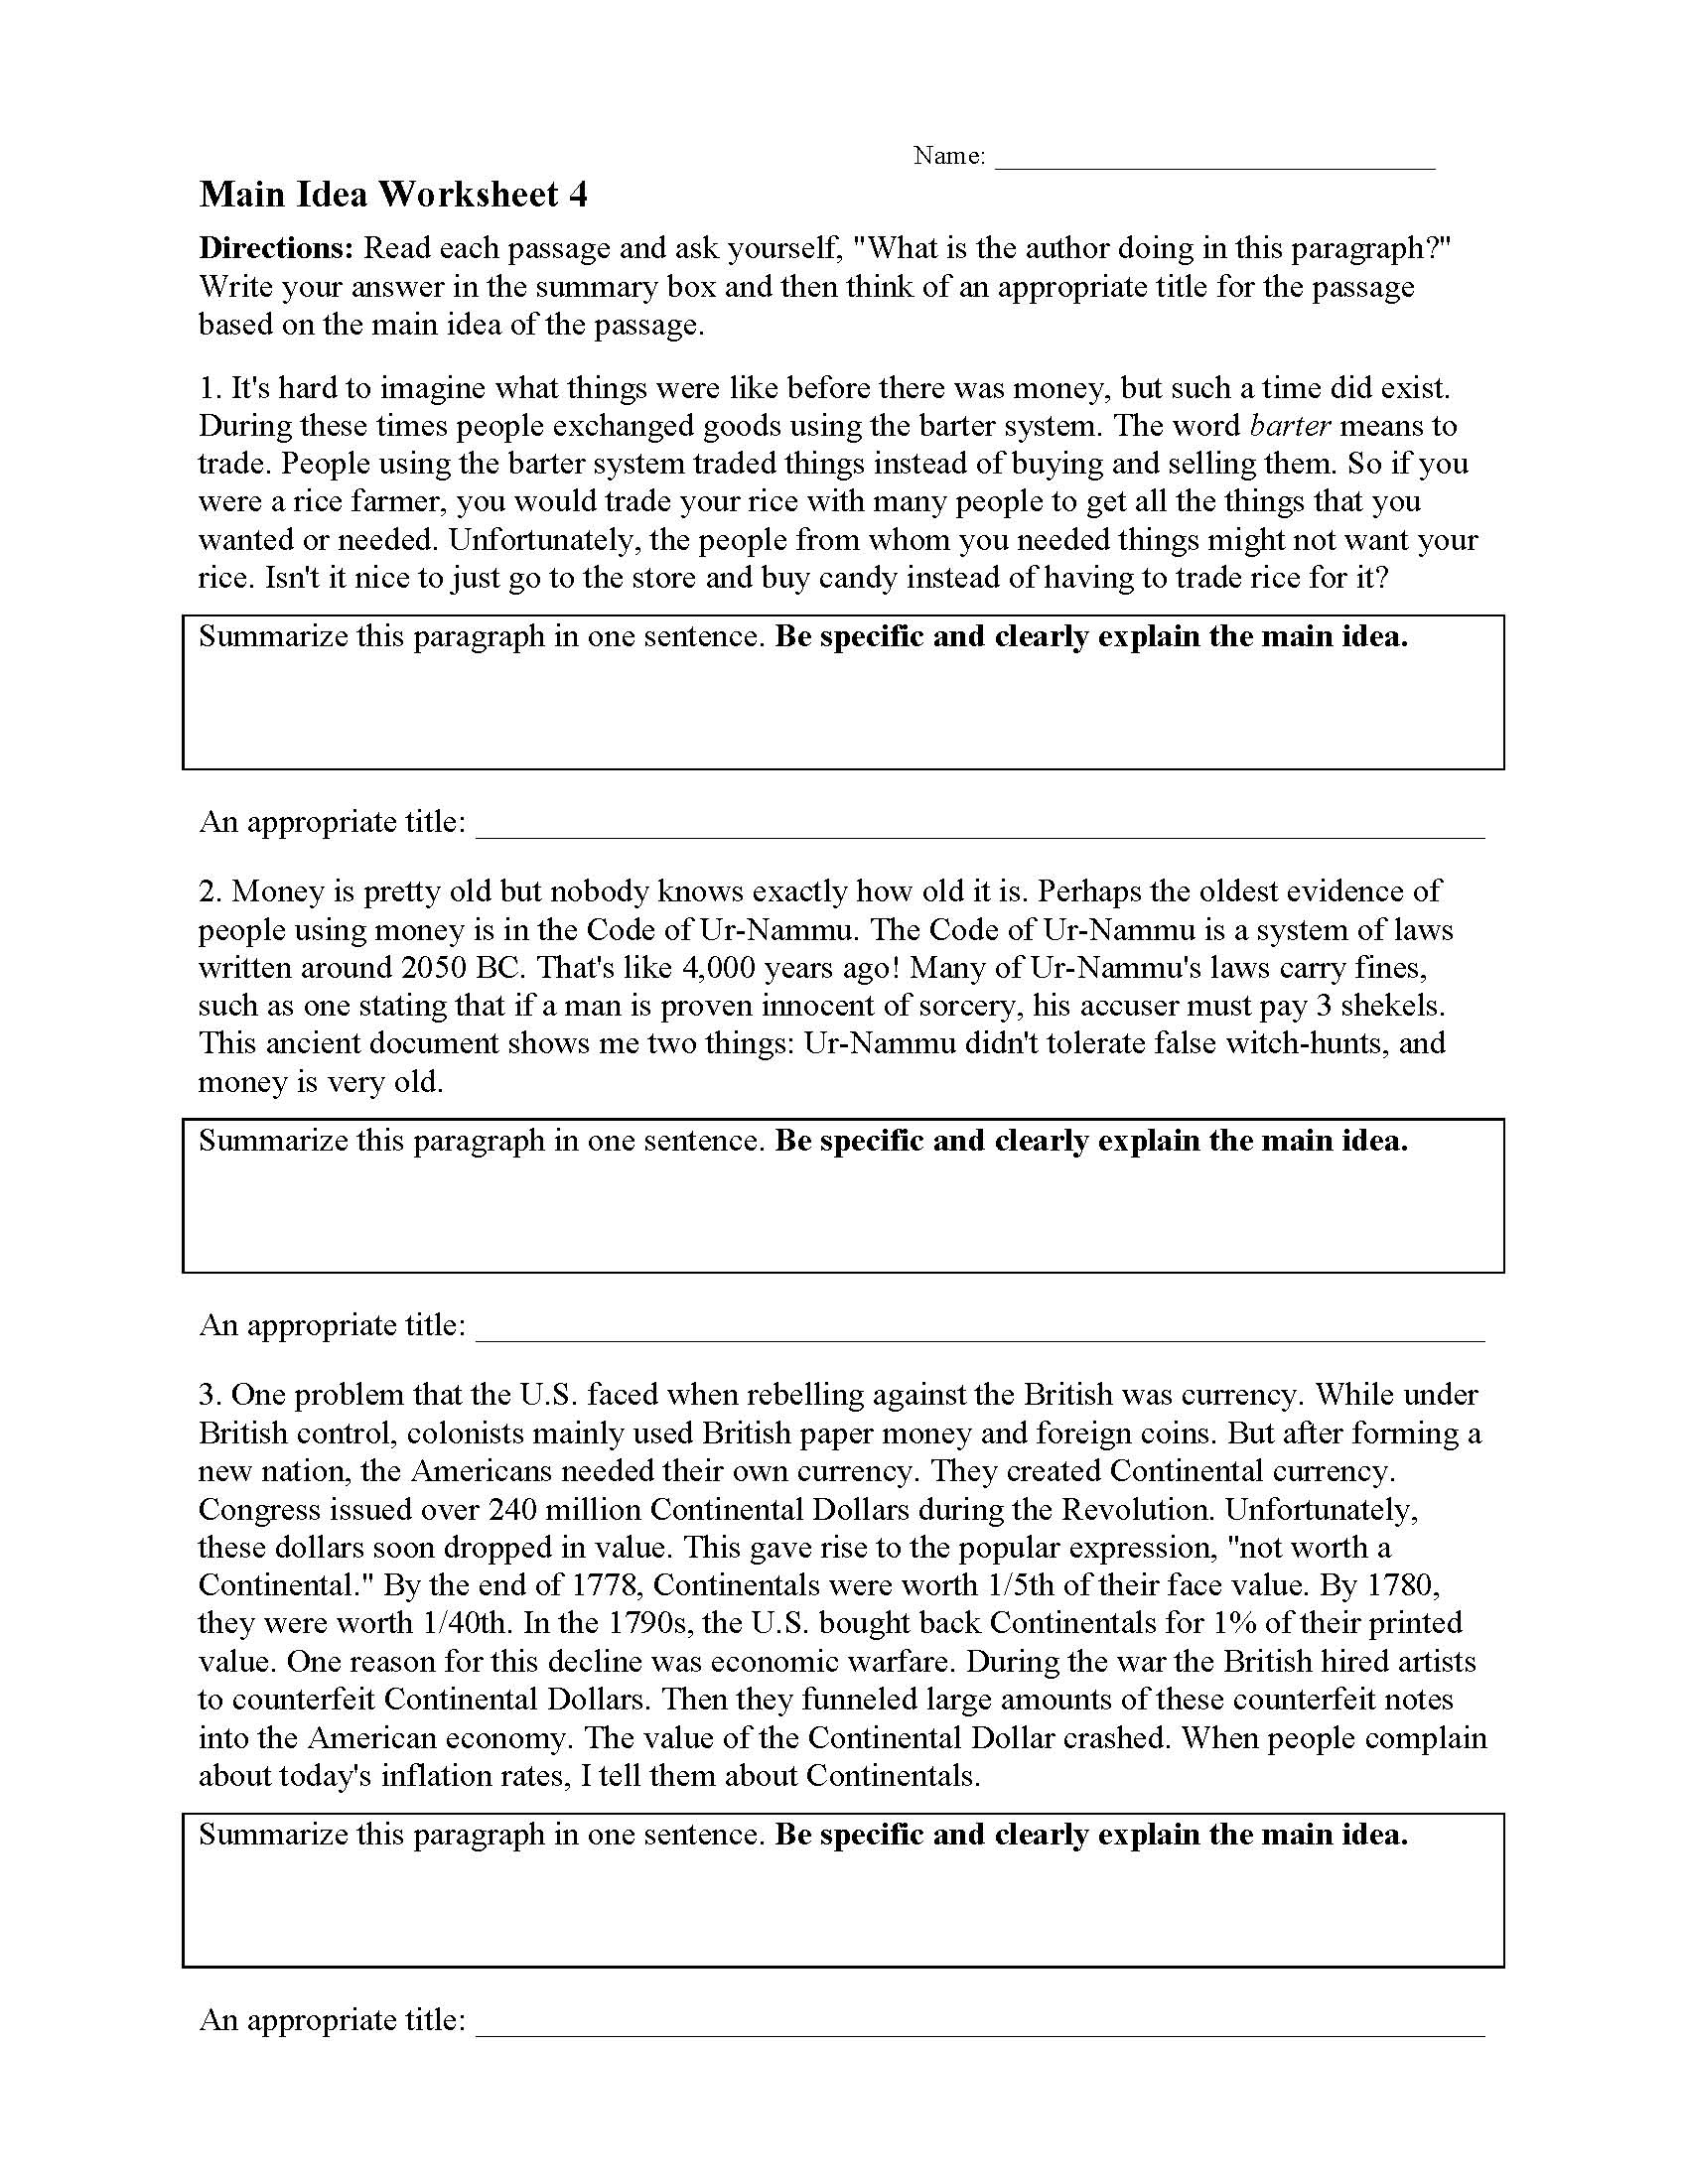 Main Idea Worksheet 25  Reading Activity For Main Idea Worksheet 4